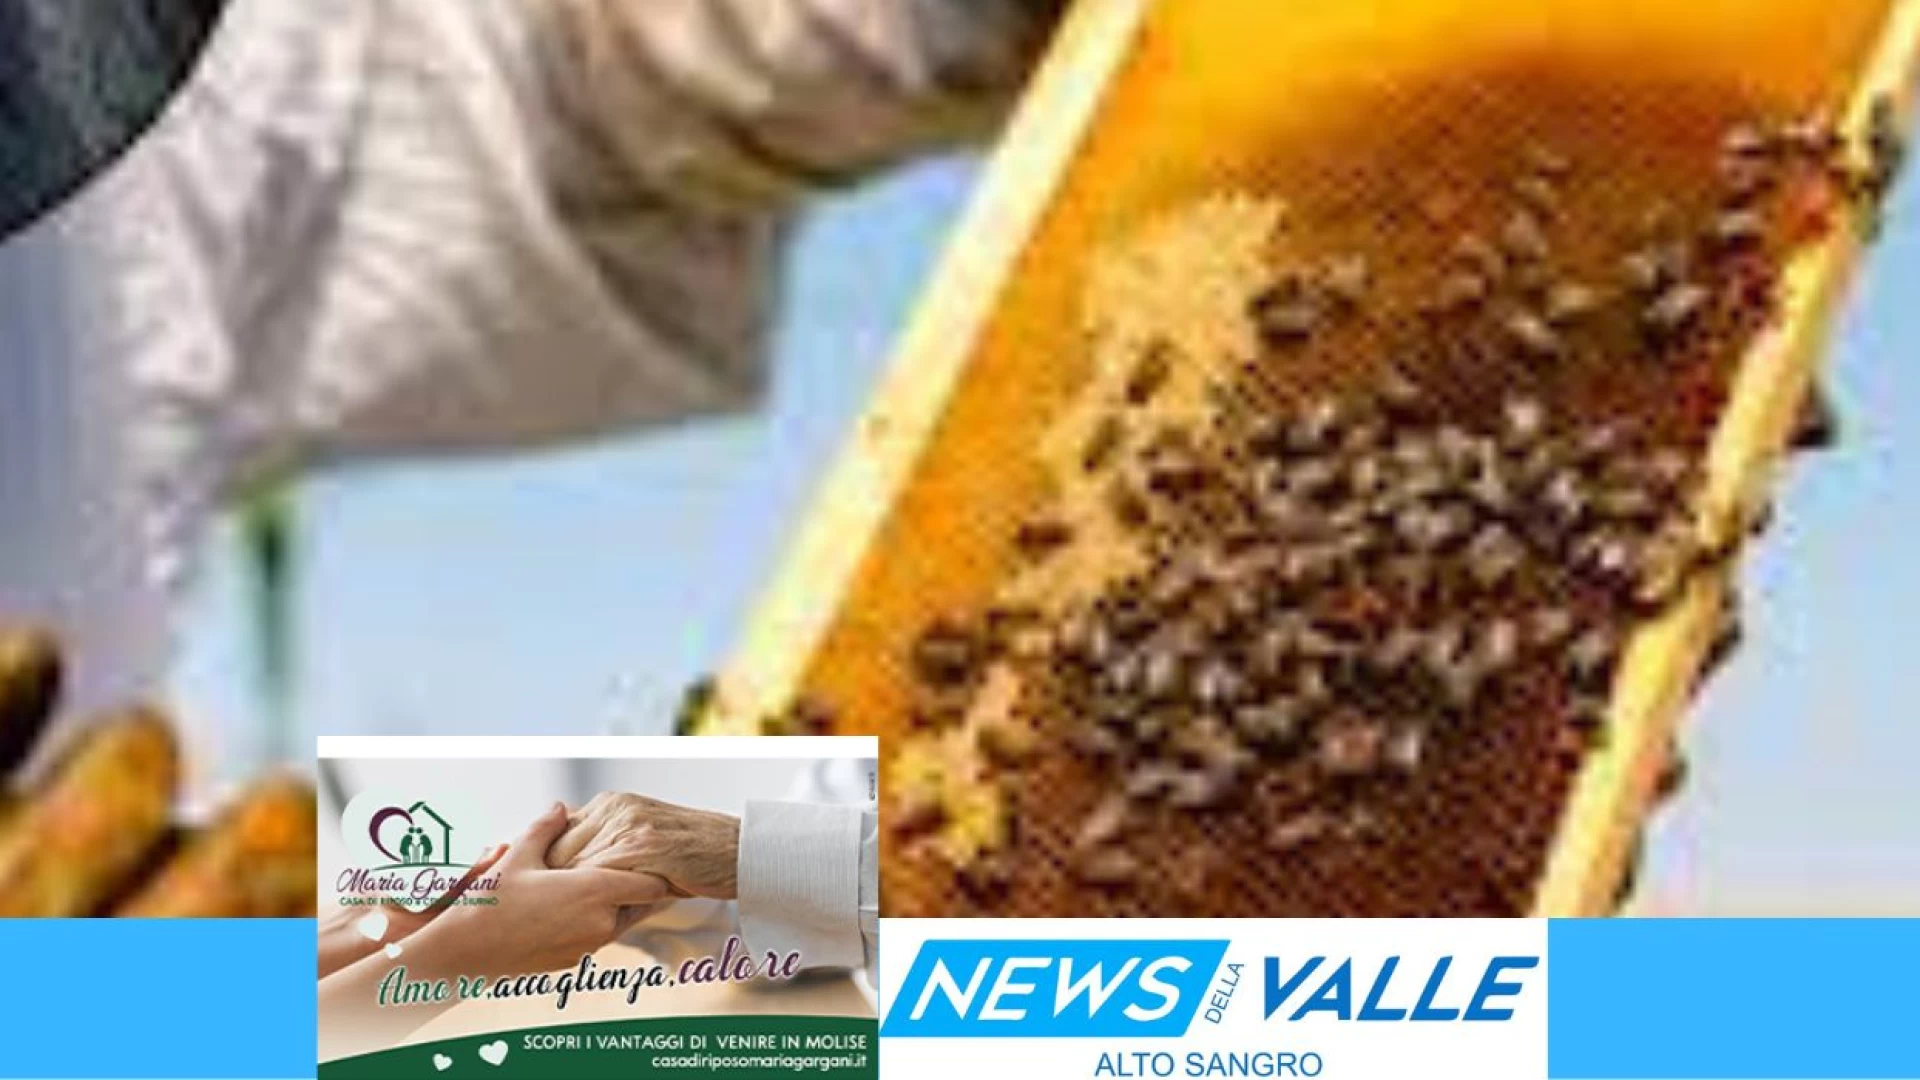 Campobasso: pubblicato l’avviso per l’accesso ai finanziamenti nel settore dell’apicoltura. La nota dell’assessore regionale Salvatore Micone.